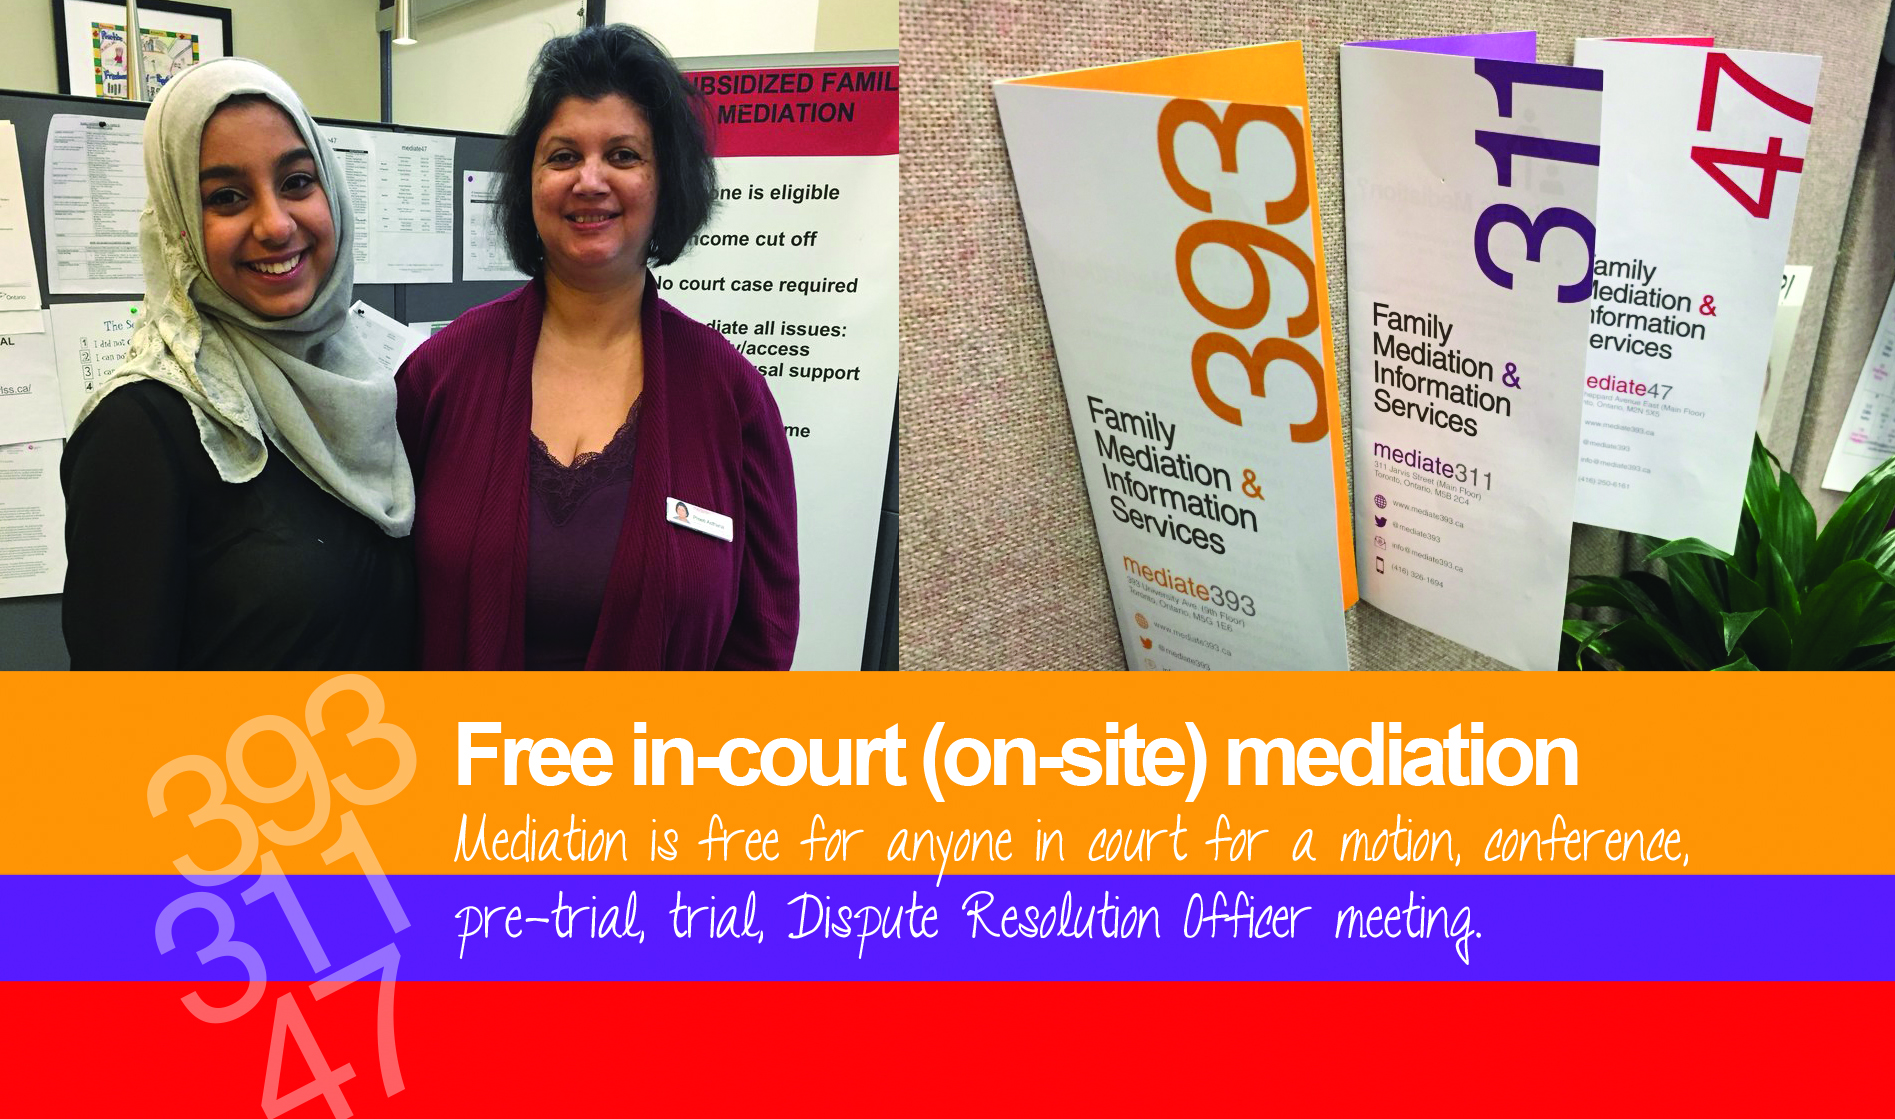 Free In Court Mediation mediate393